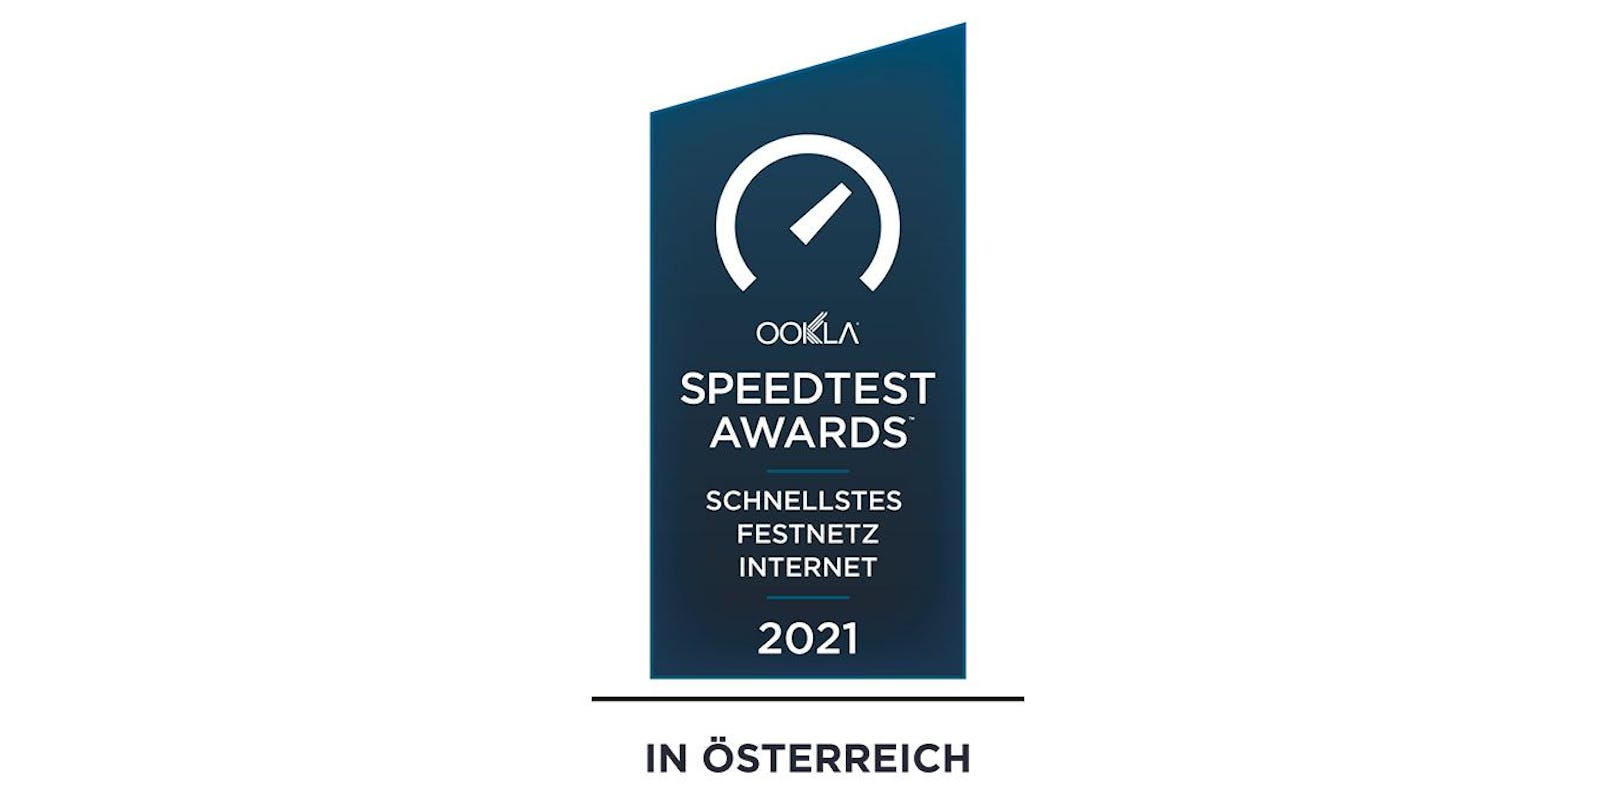 Magenta Telekom erhält eine der wichtigsten Auszeichnungen für sein österreichweites Breitbandinternet, den Ookla Speedtest Award für das schnellste Festnetz-Internet 2021.